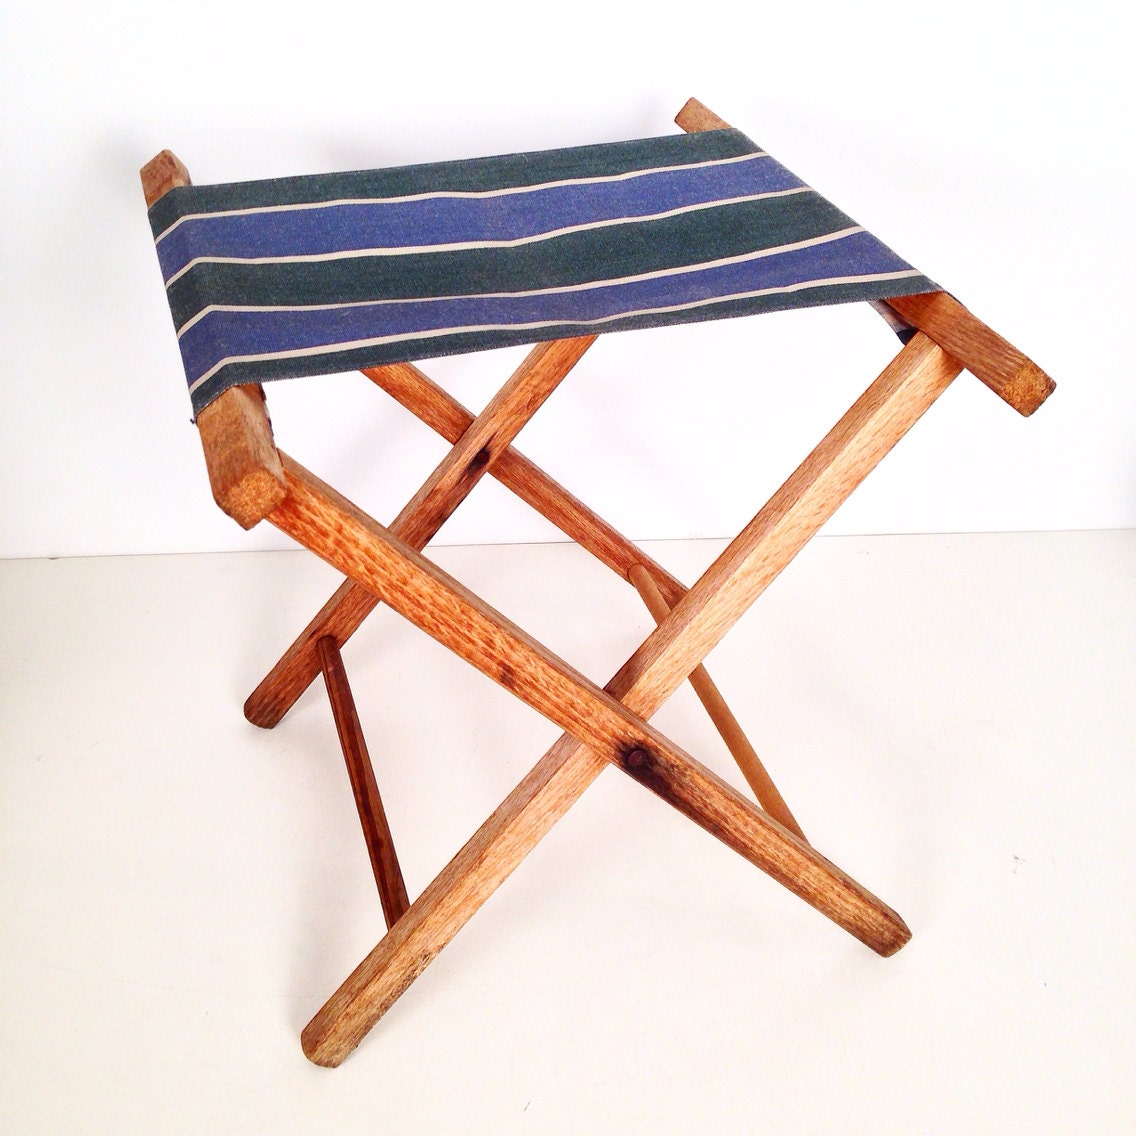 vintage camp stool â folding portable wood and canvas camping stool â Haute Juice